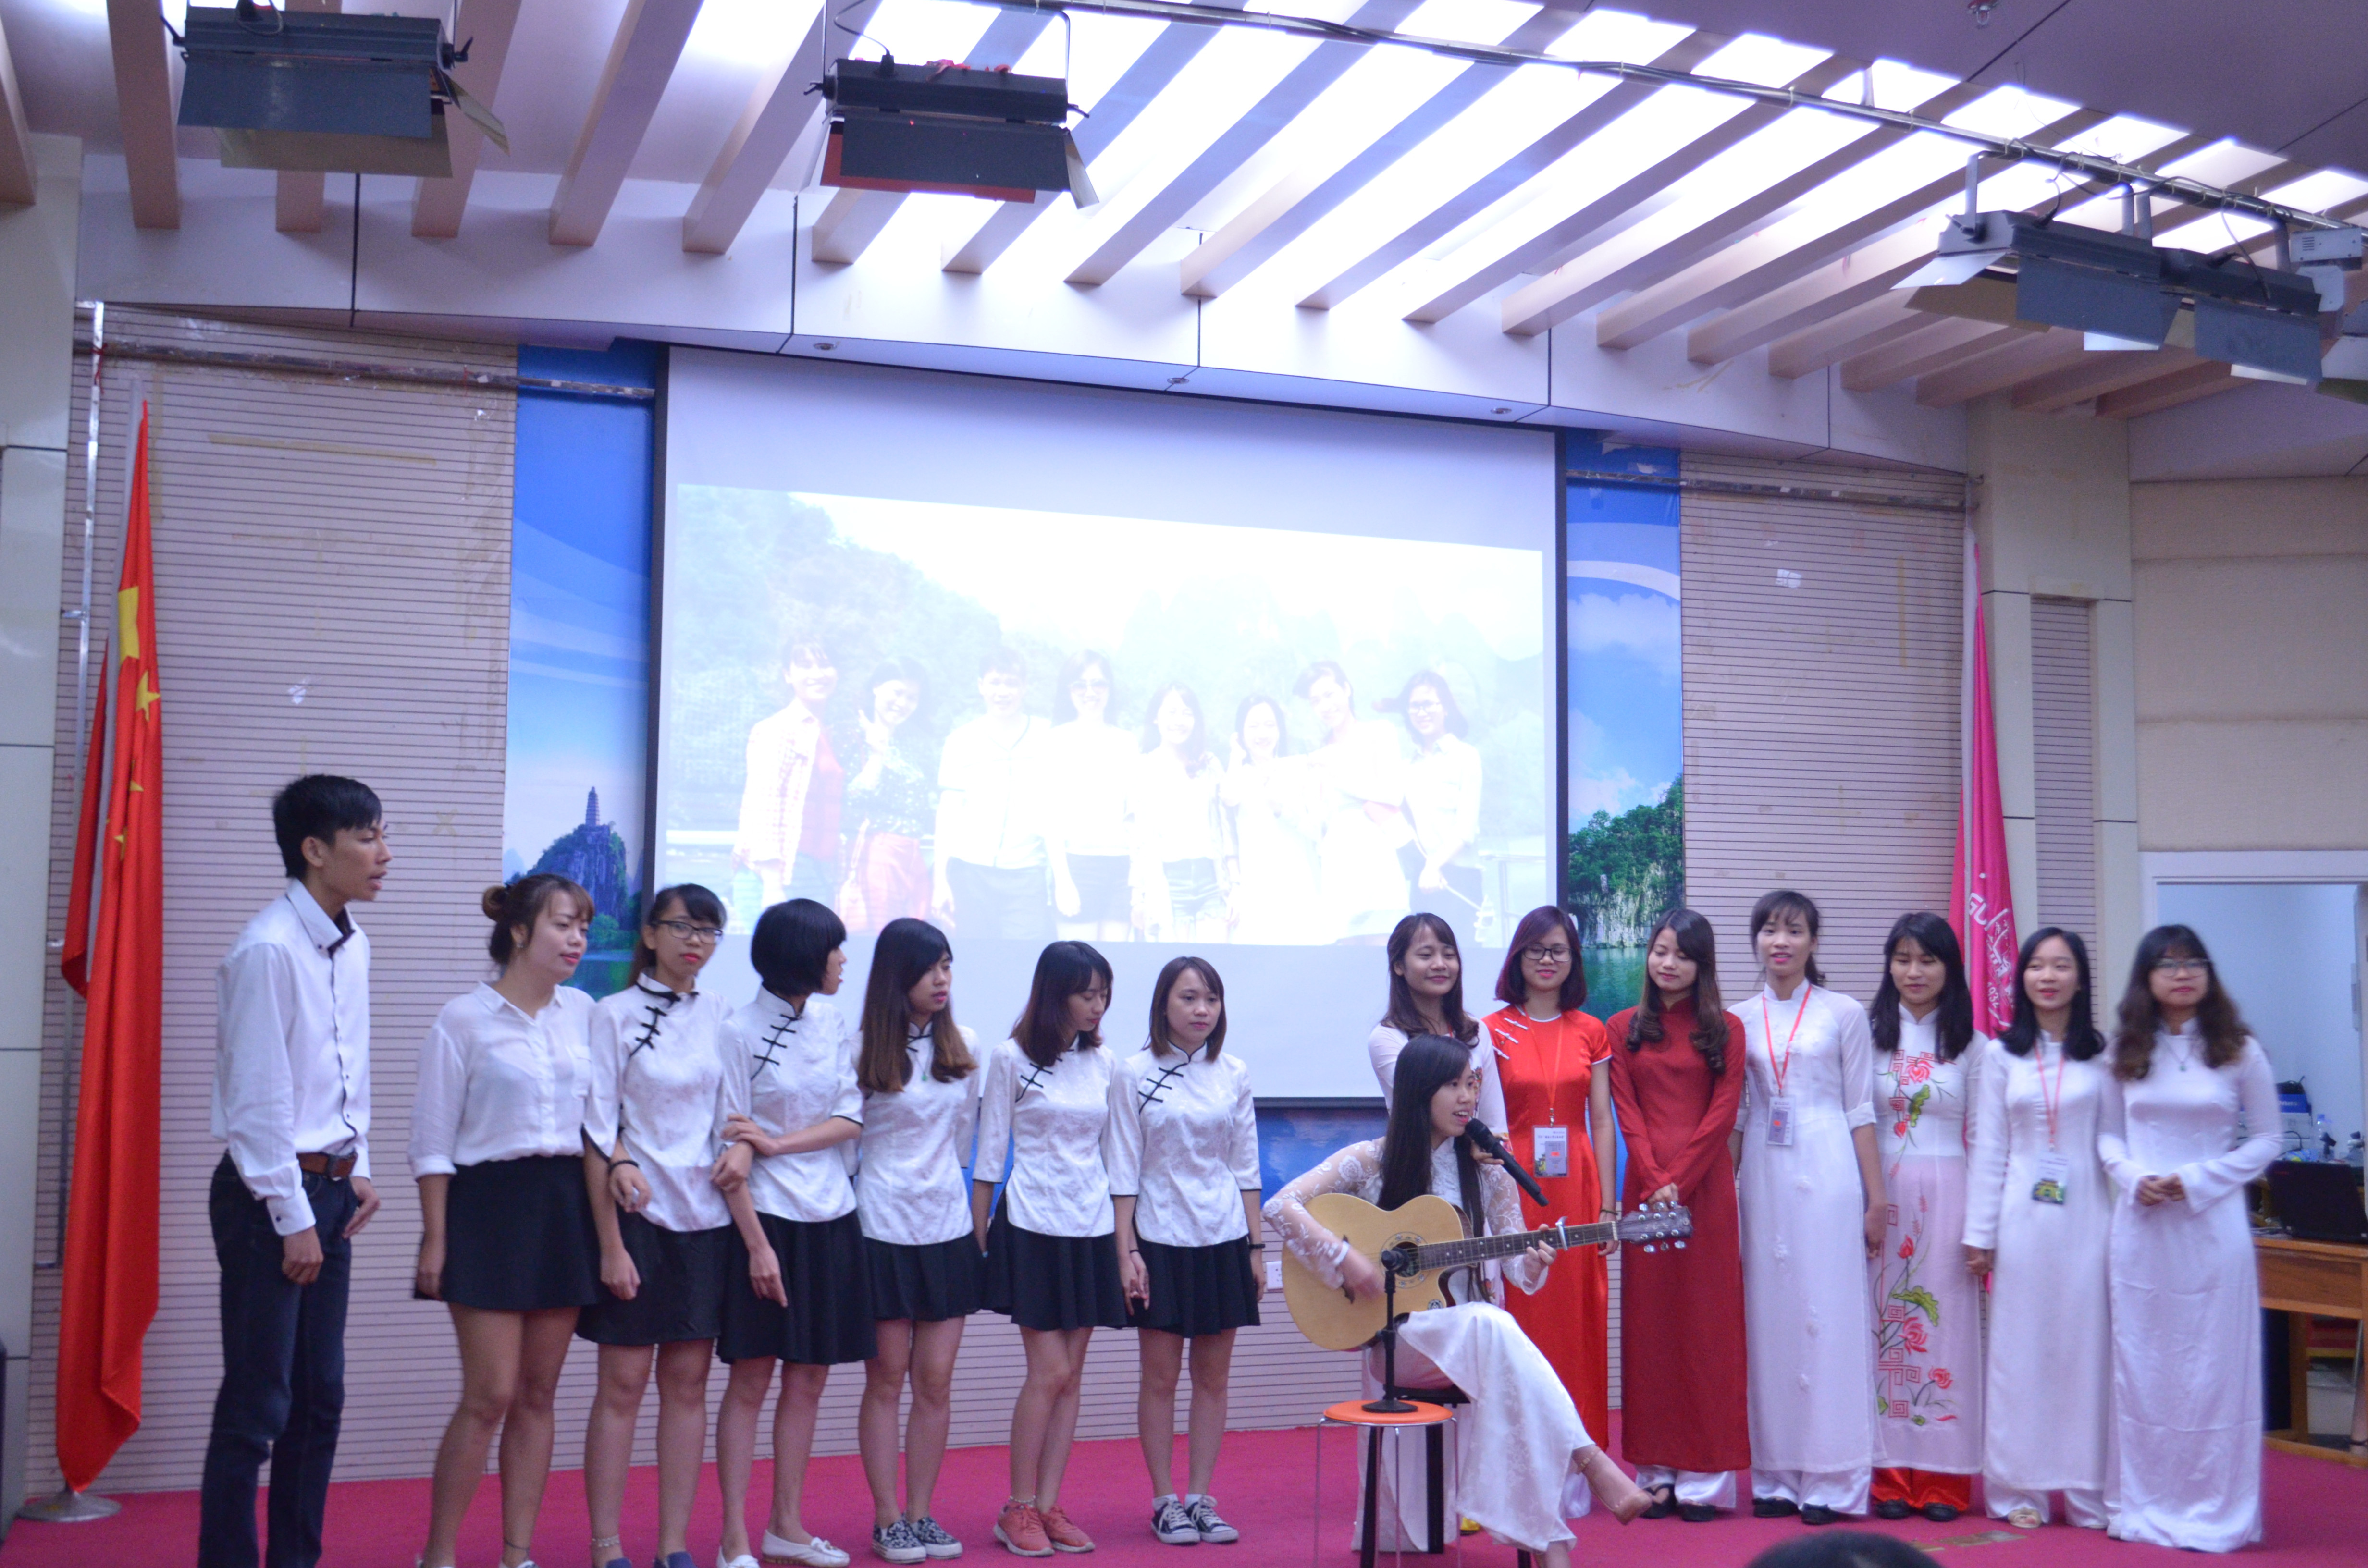 越南同学带来精彩的合唱表演